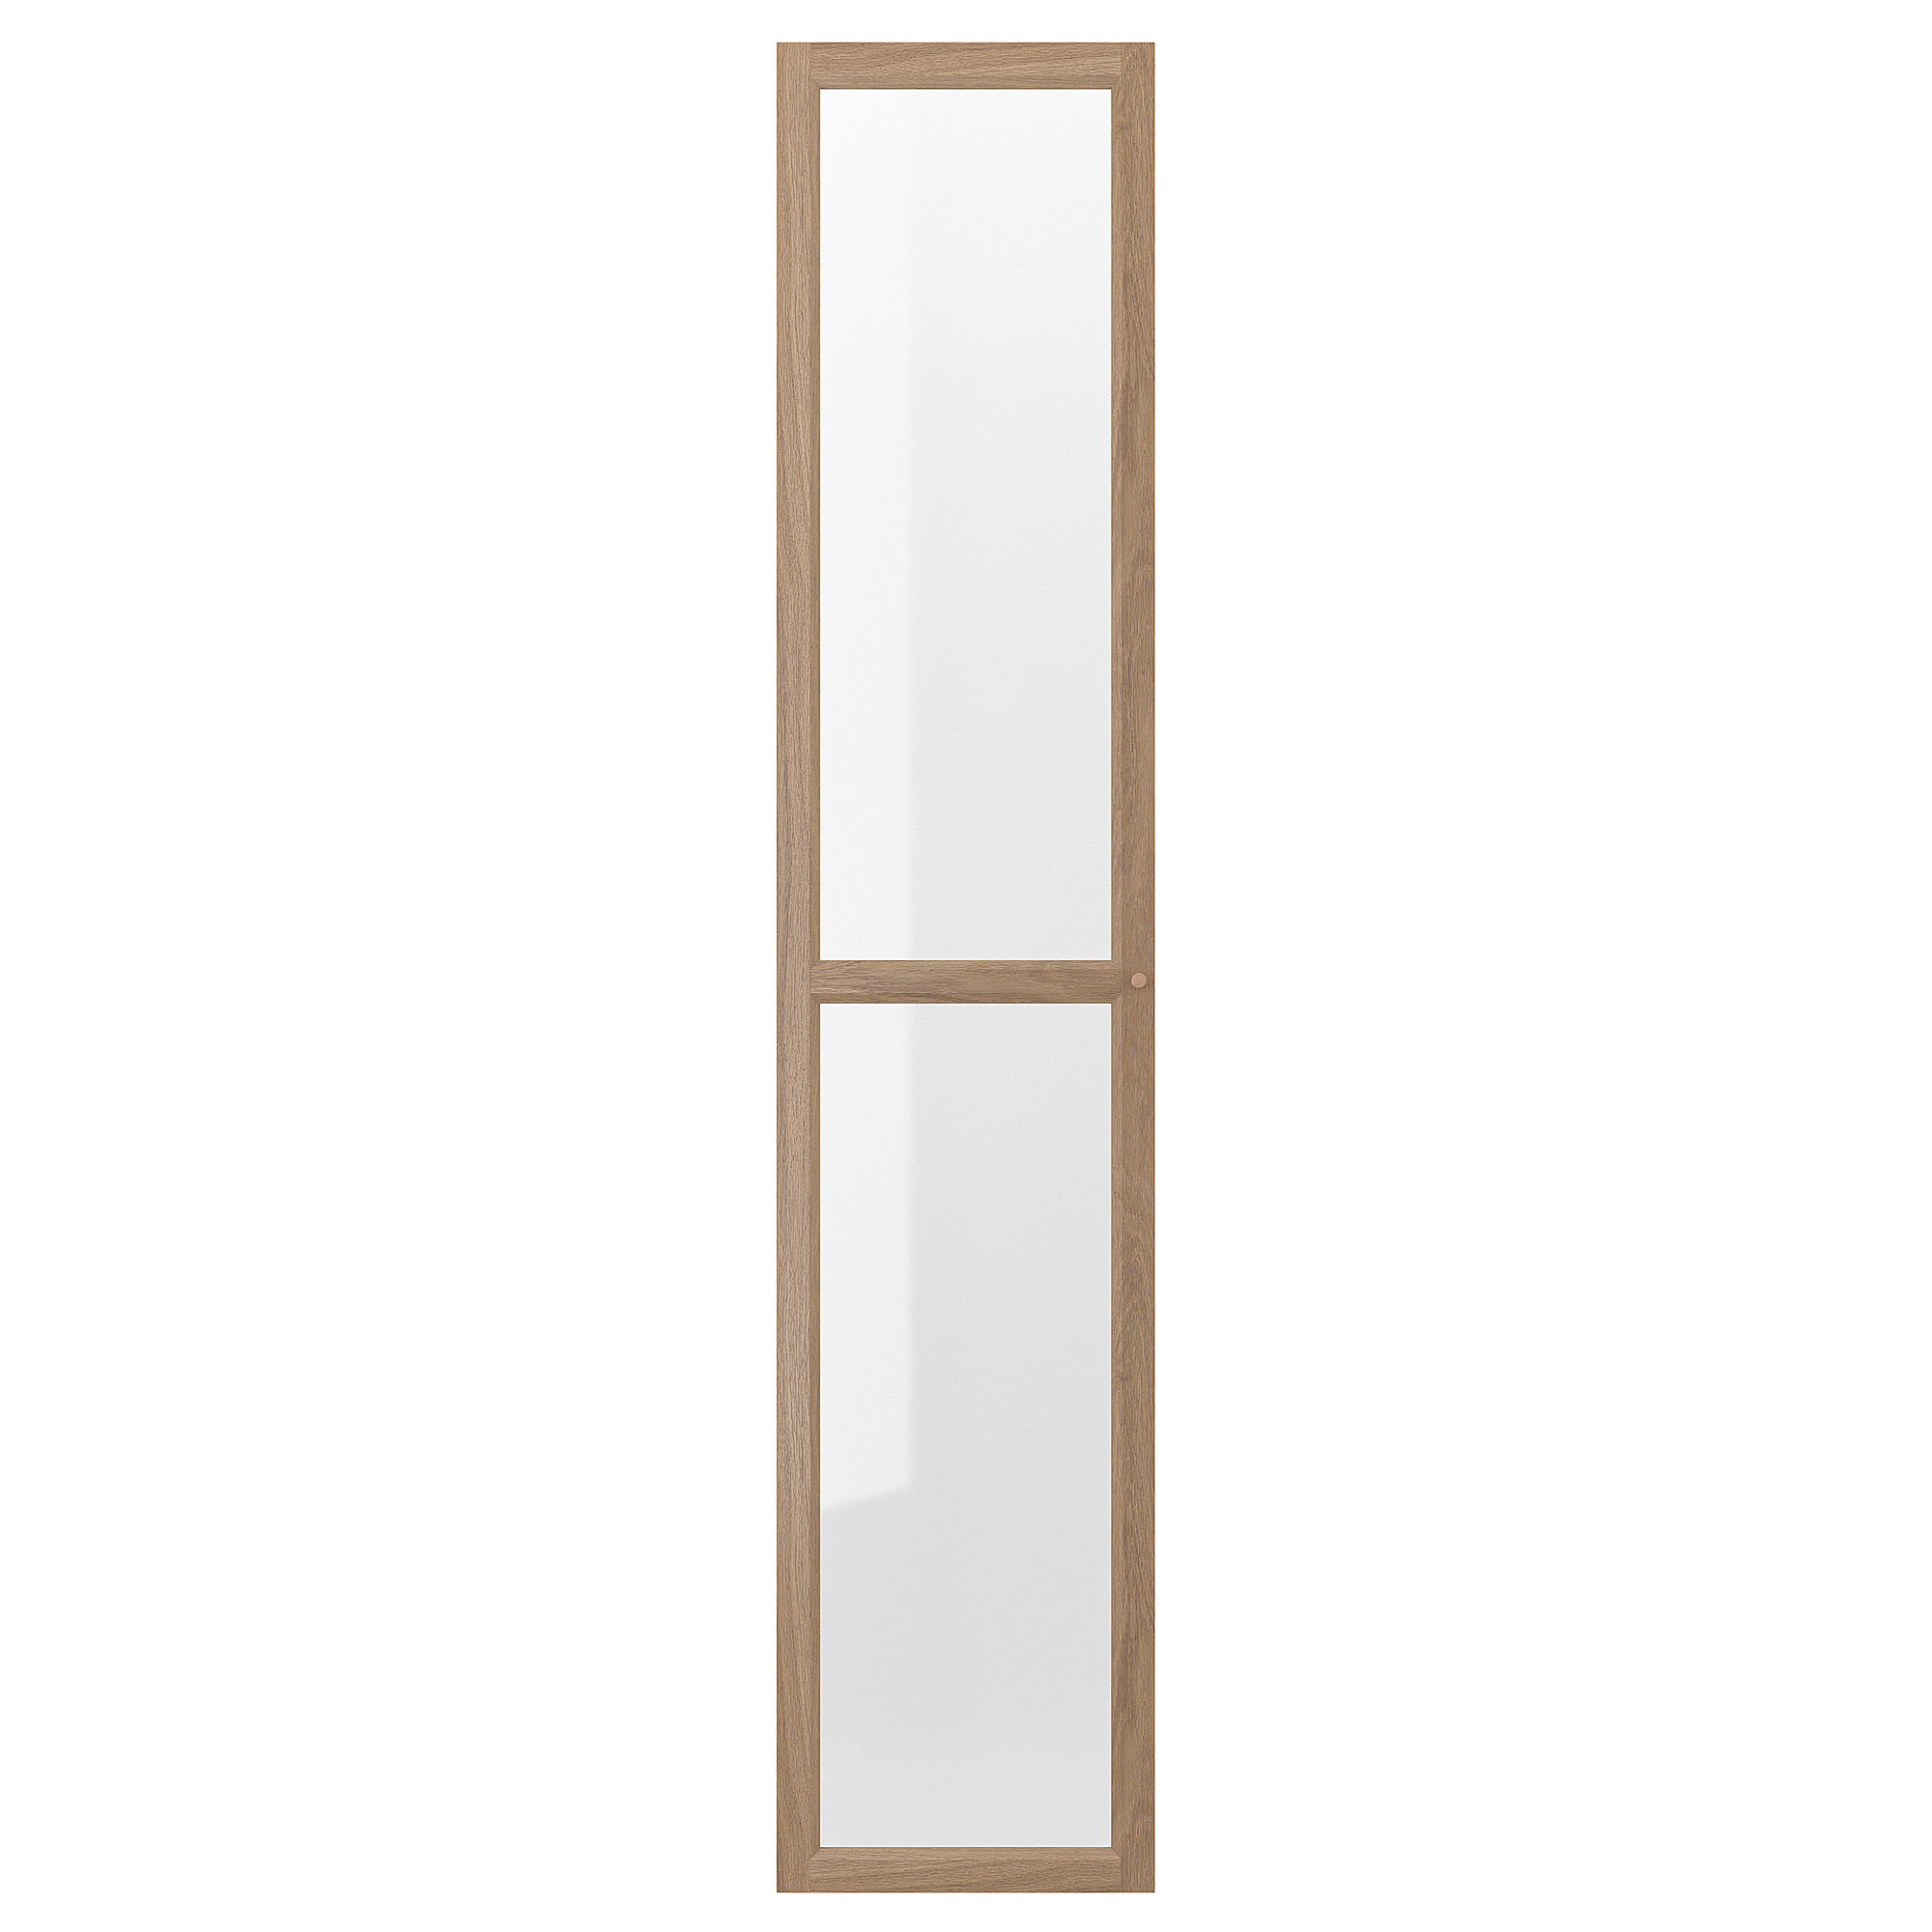 OXBERG glass door